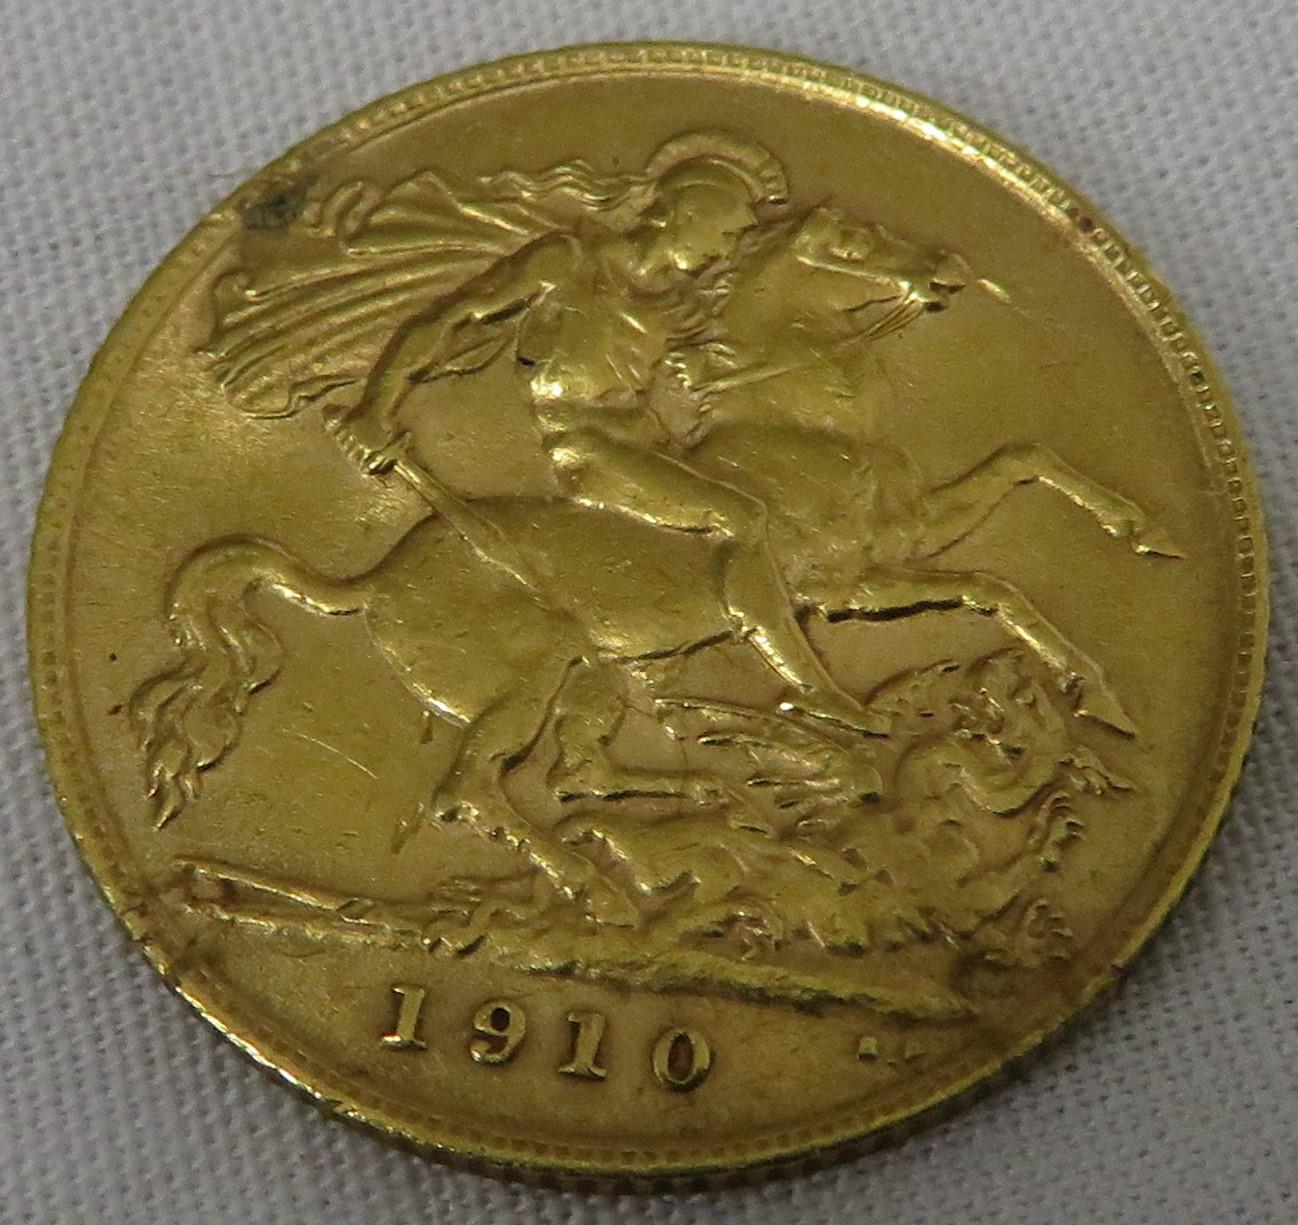 1910 half sovereign